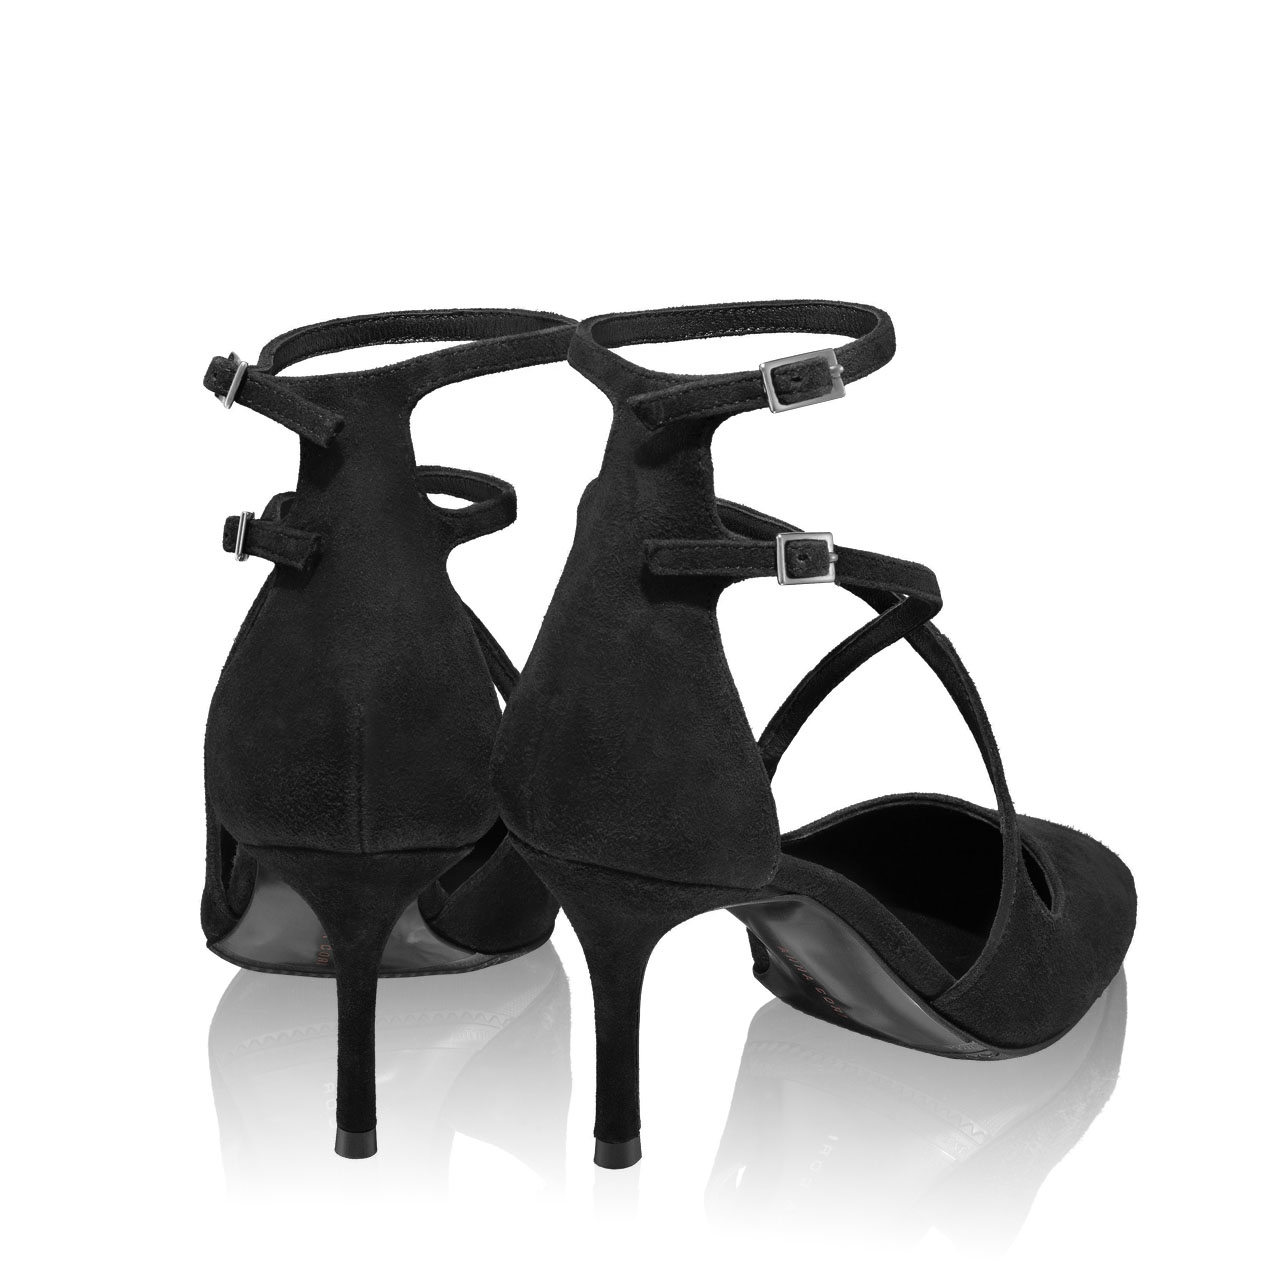 Imagine Pantofi Eleganți Damă 5992 Camoscio Negru